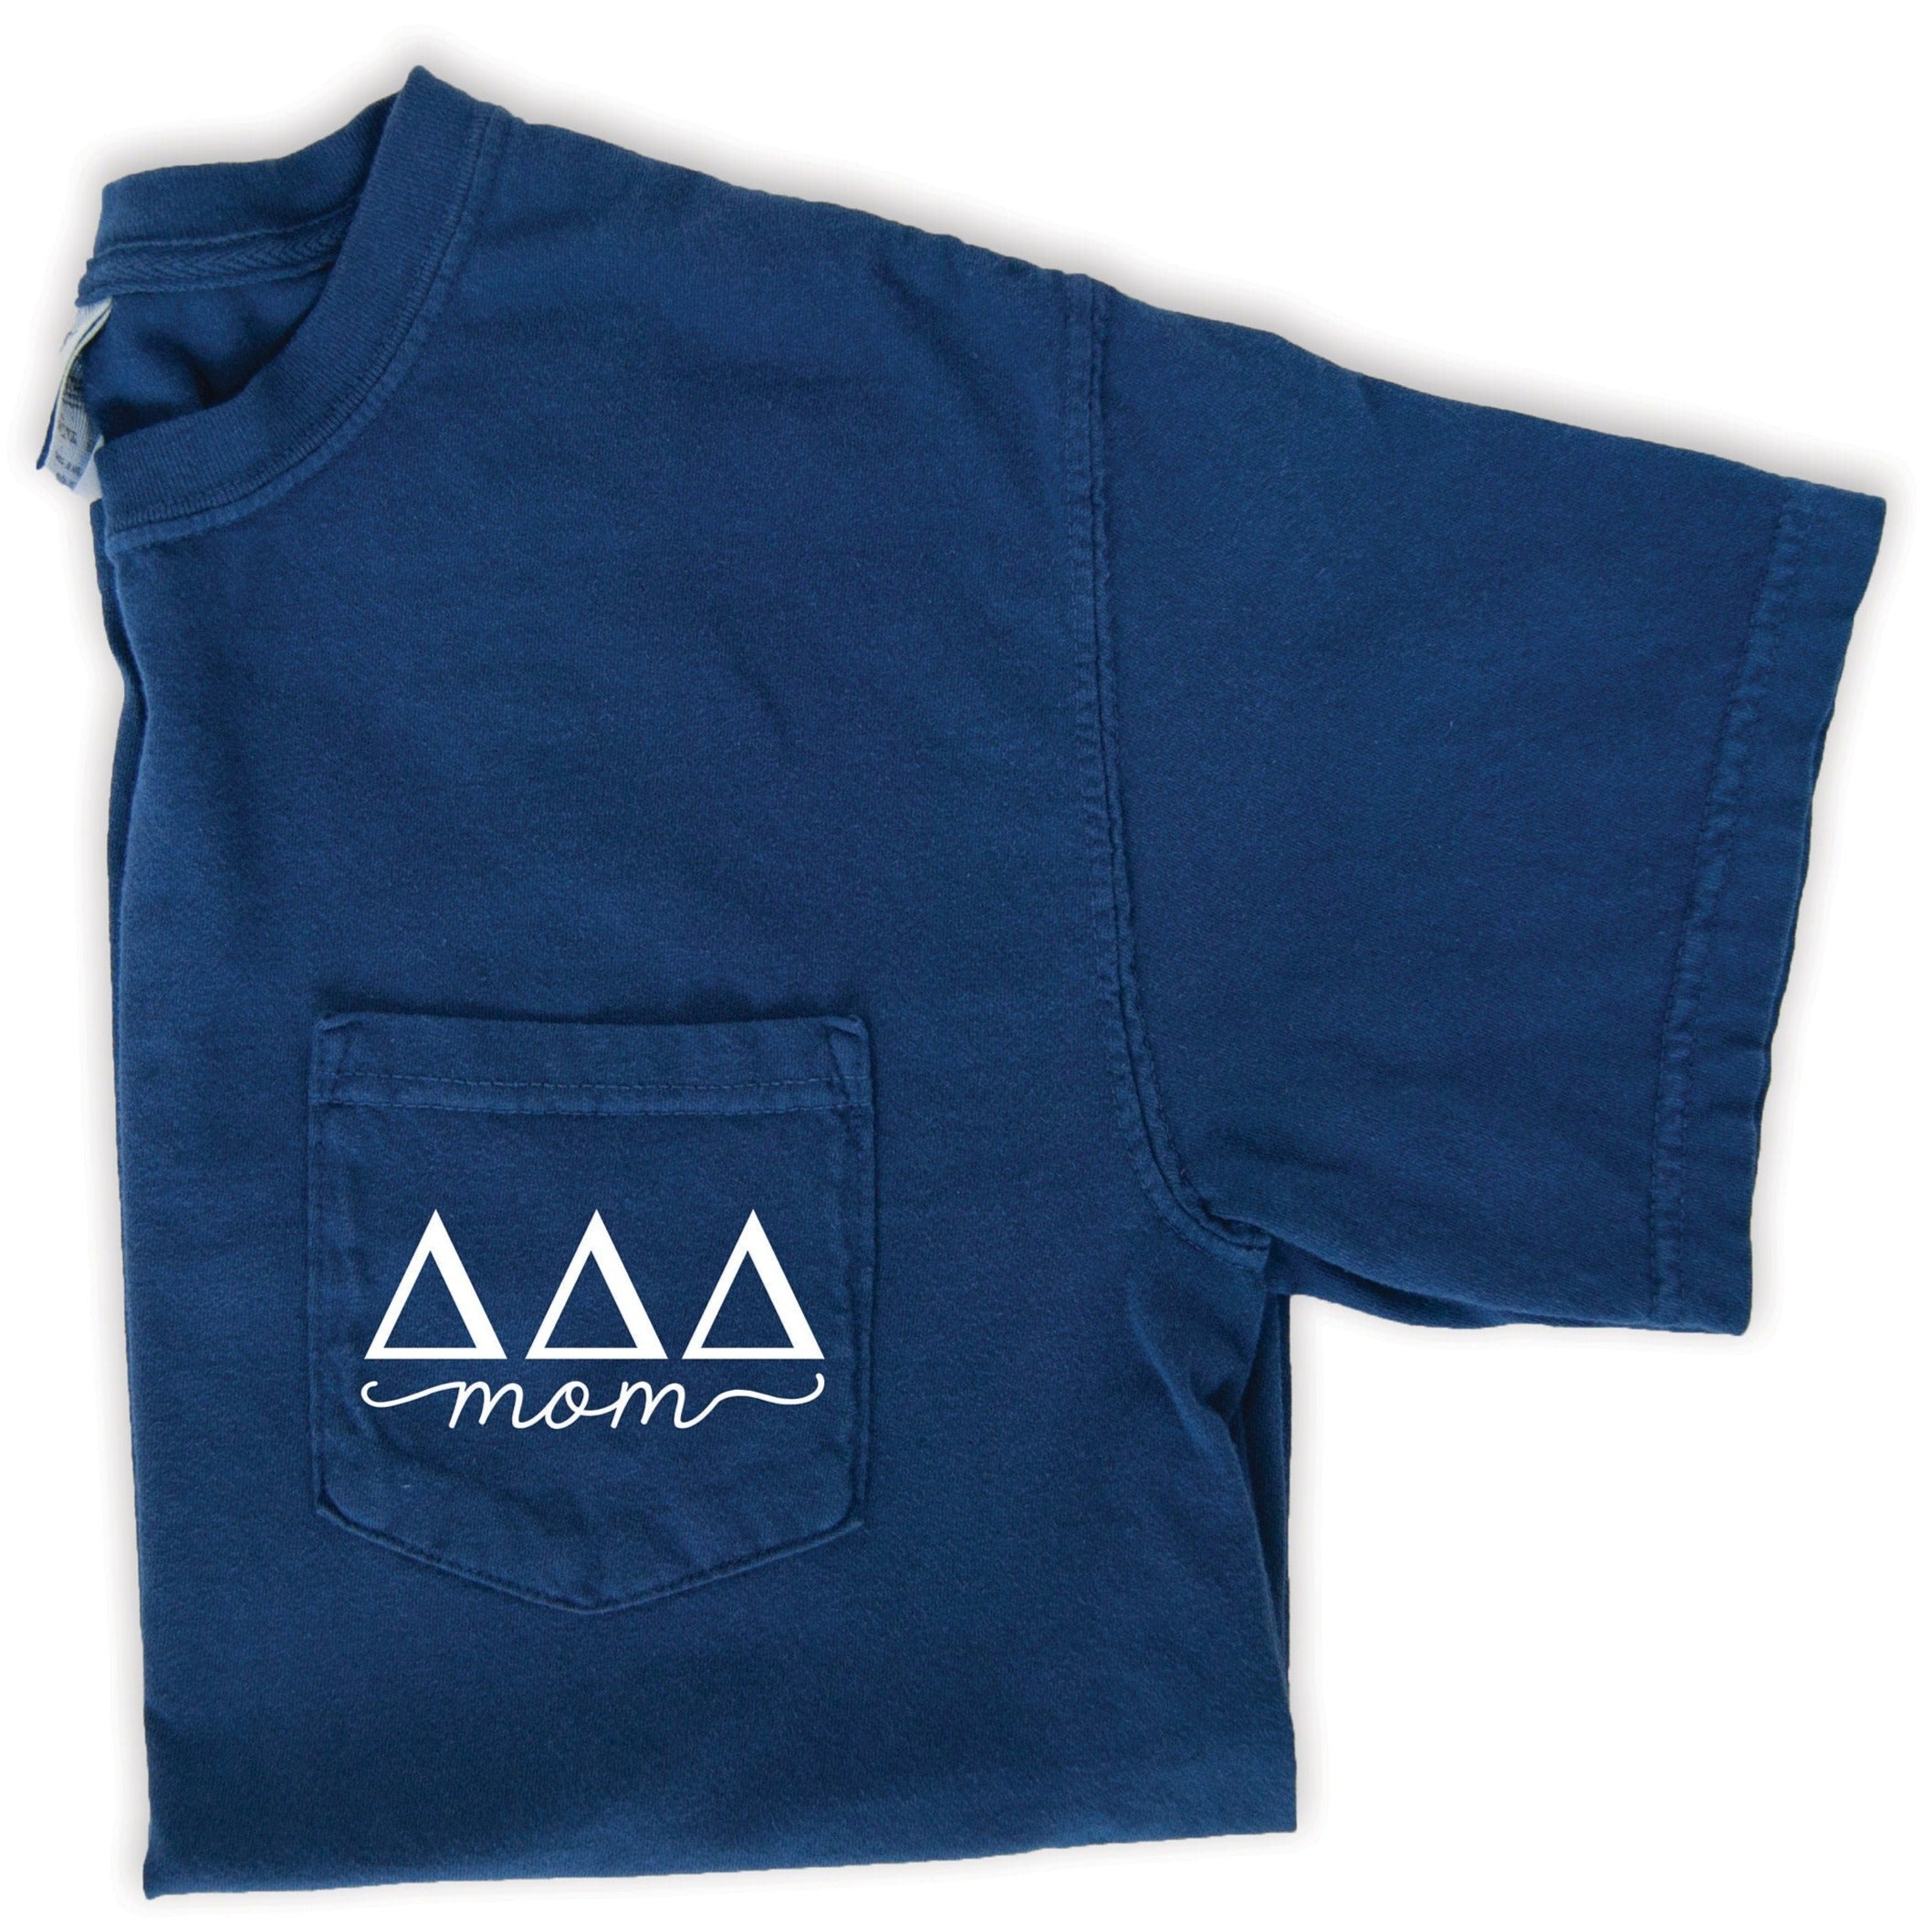 Delta Delta Delta Mom T-Shirt - Navy - Go Greek Chic